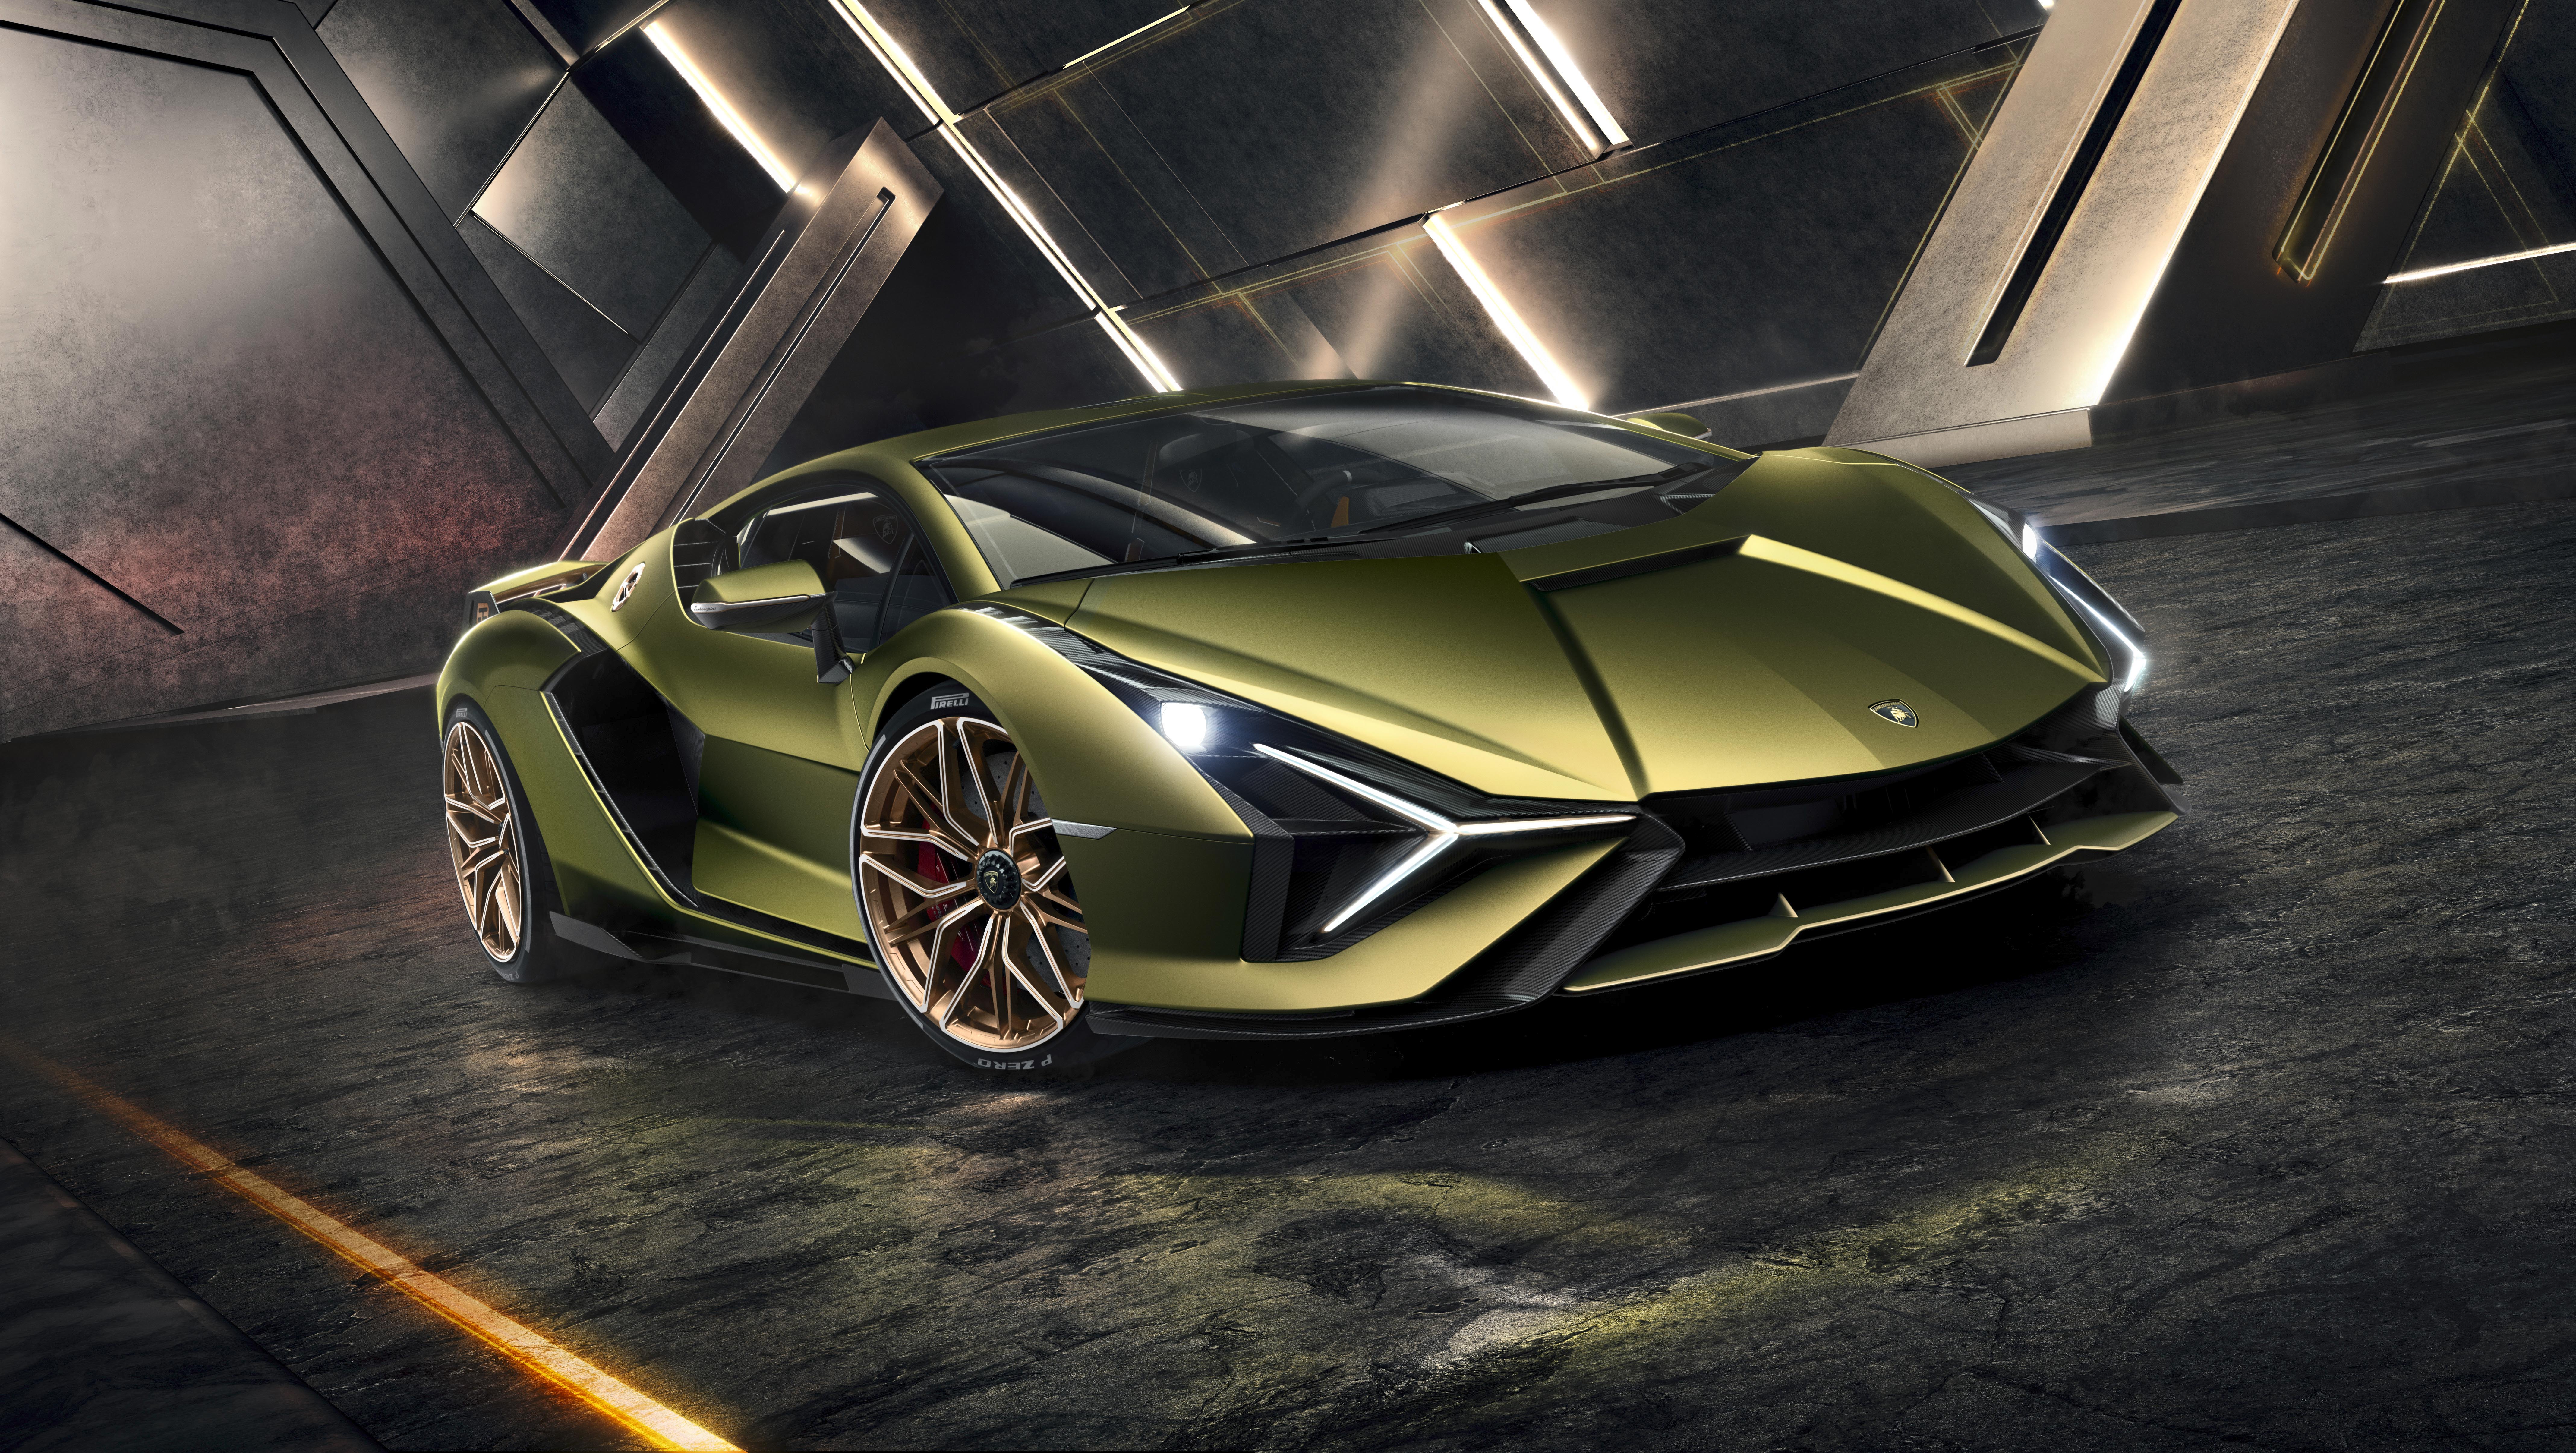 Meilleurs fonds d'écran Lamborghini Sian Fkp 37 pour l'écran du téléphone